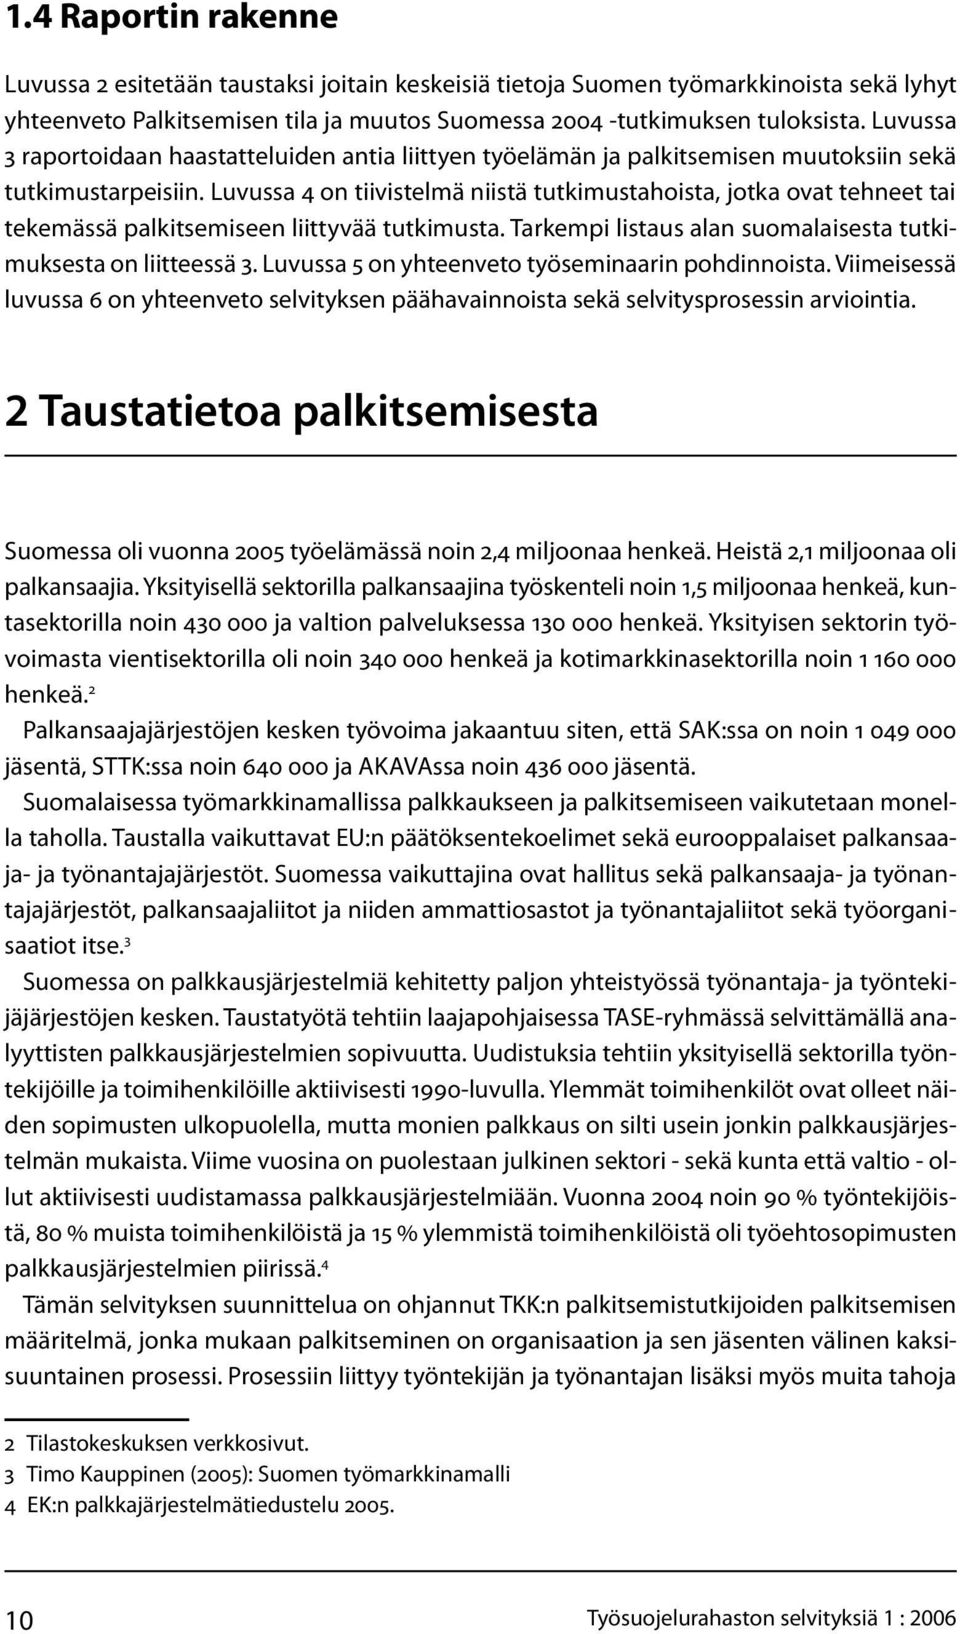 Luvussa 4 on tiivistelmä niistä tutkimustahoista, jotka ovat tehneet tai tekemässä palkitsemiseen liittyvää tutkimusta. Tarkempi listaus alan suomalaisesta tutkimuksesta on liitteessä 3.